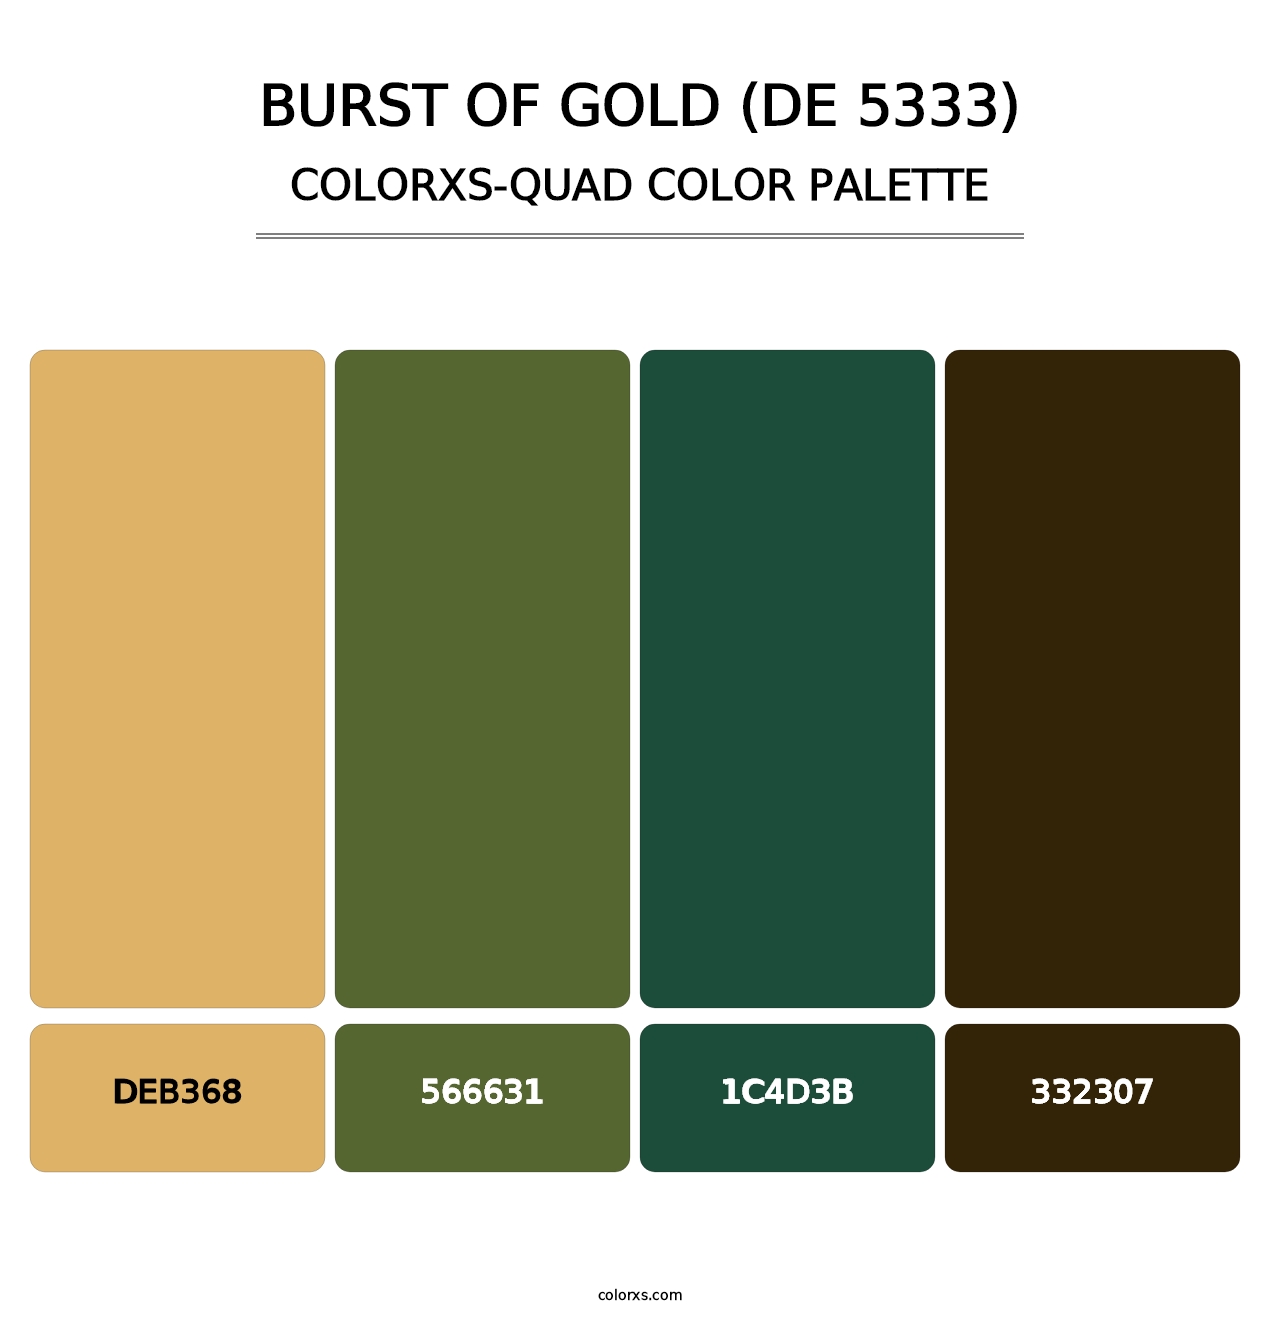 Burst of Gold (DE 5333) - Colorxs Quad Palette